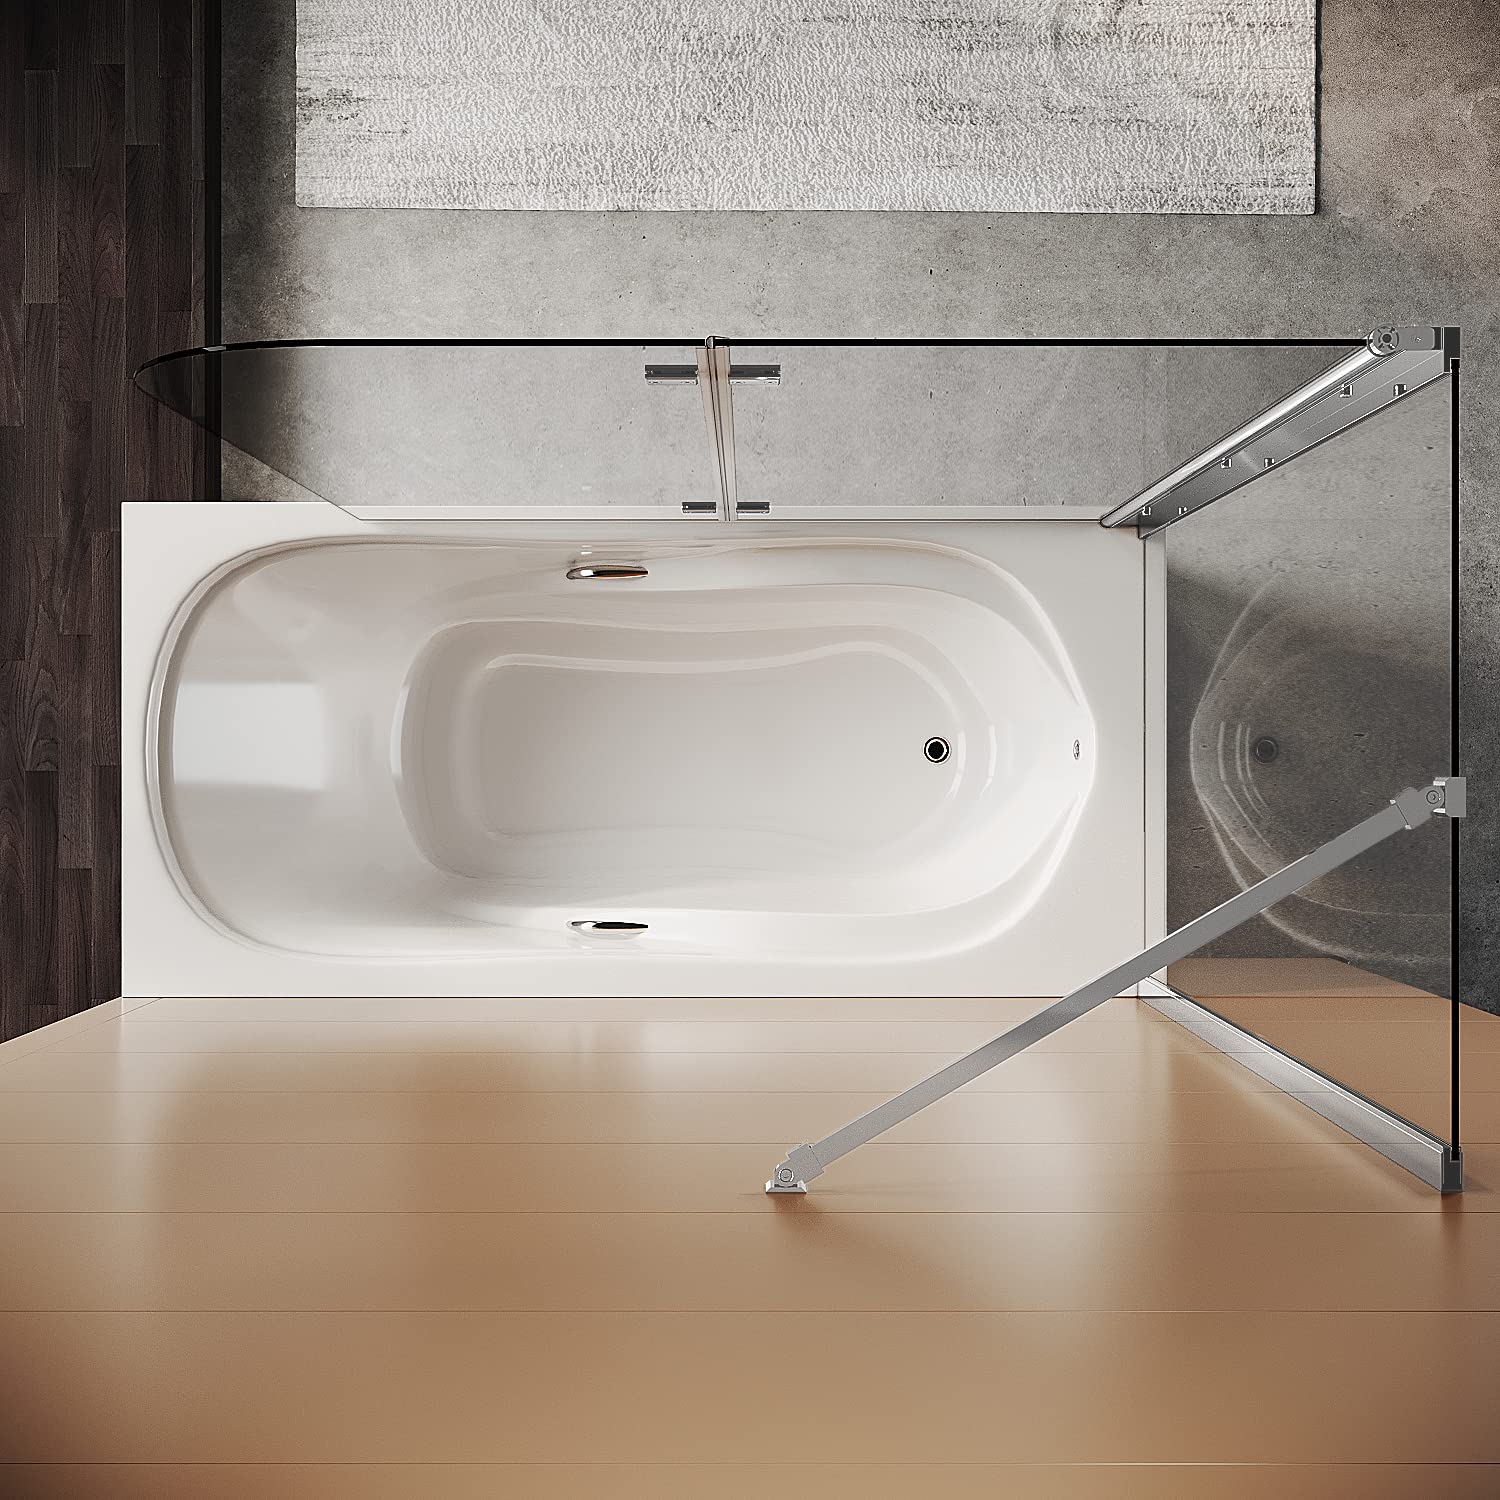 SONNI Duschwand für Badewanne mit Schwarzem Gitterdesign NANO-GLAS Badewannenaufsatz faltbar Duschabtrennung Badewanne 80x140 cm(BxH)